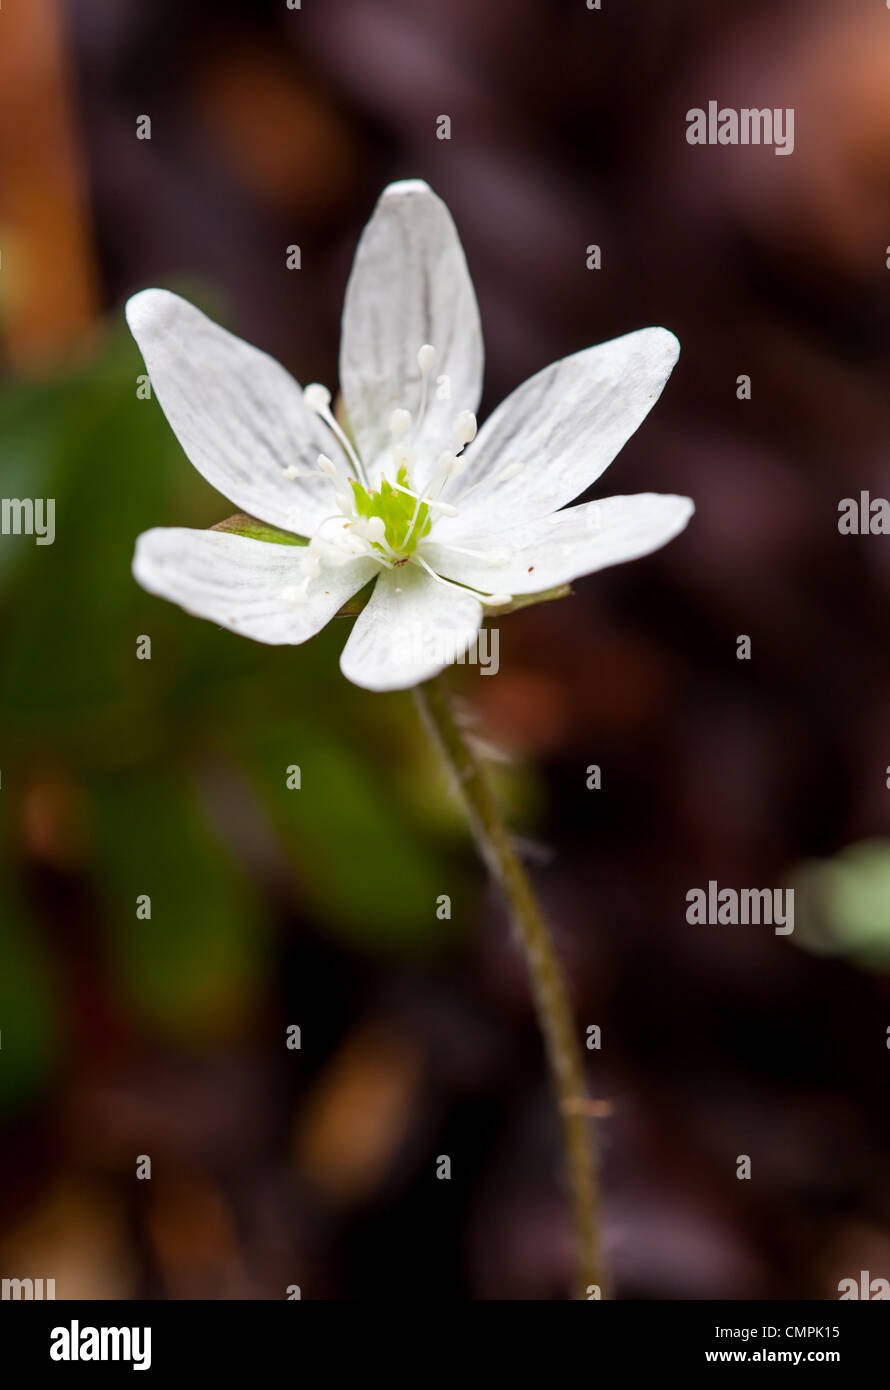 Sharp à lobes hepatica Hepatica nobilis (acuta) est une fleur sauvage qui fleurit en mars ou avril. Il a 5 à 12 pétales et peut être blanc à violet en couleur. Les feuilles sont sur une tige velue avec environ 3 lobes en forme d'oeuf et pointu. Banque D'Images